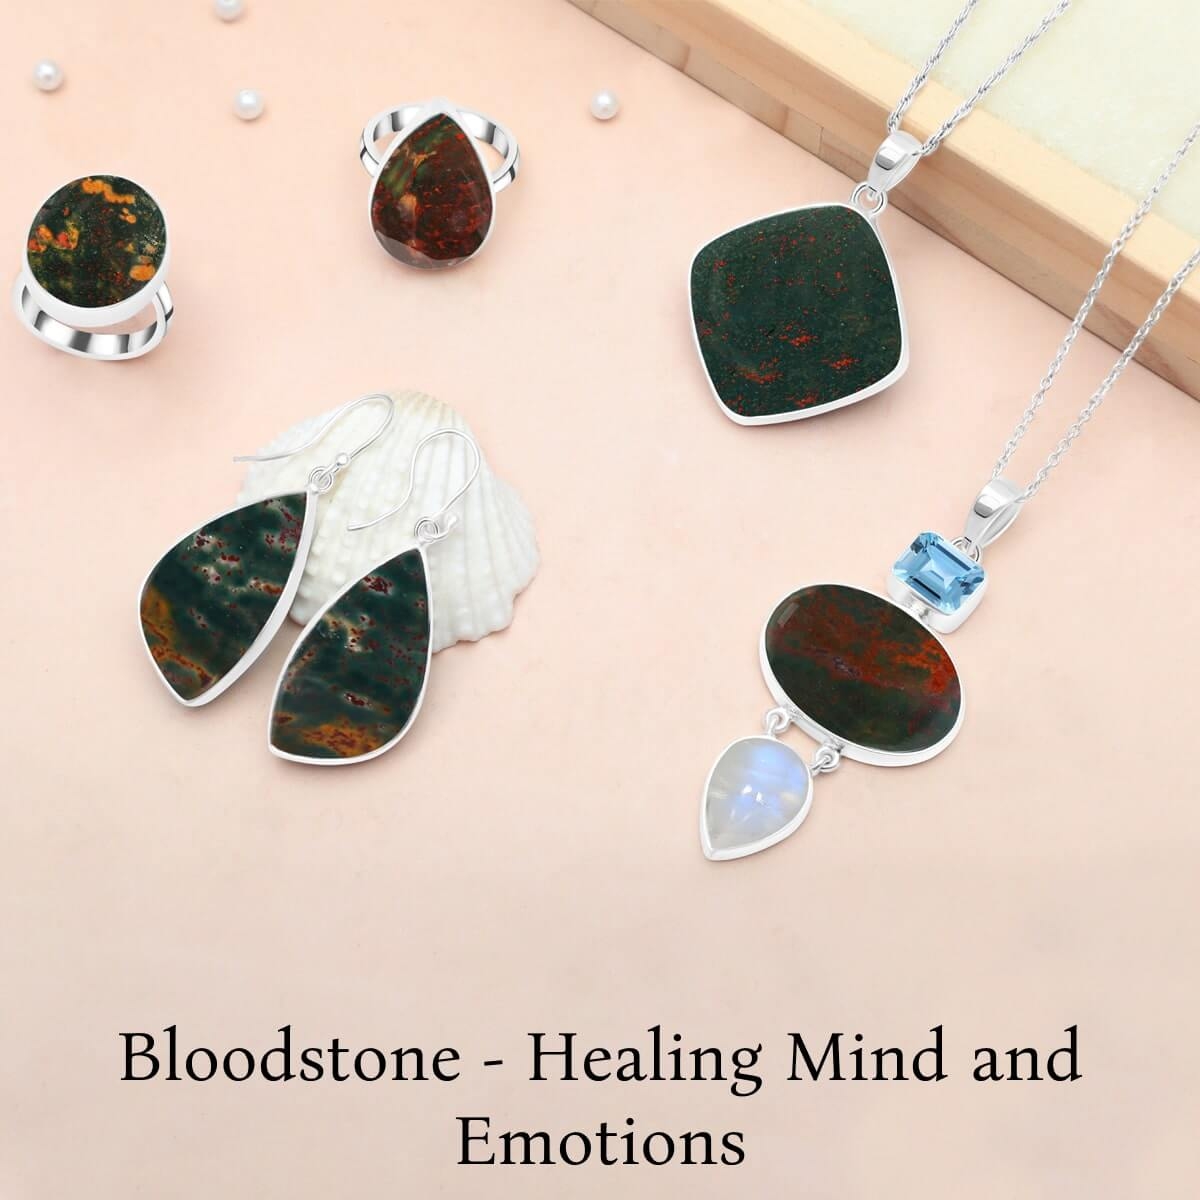 Bloodstone Mental & Emotional Healing Properties